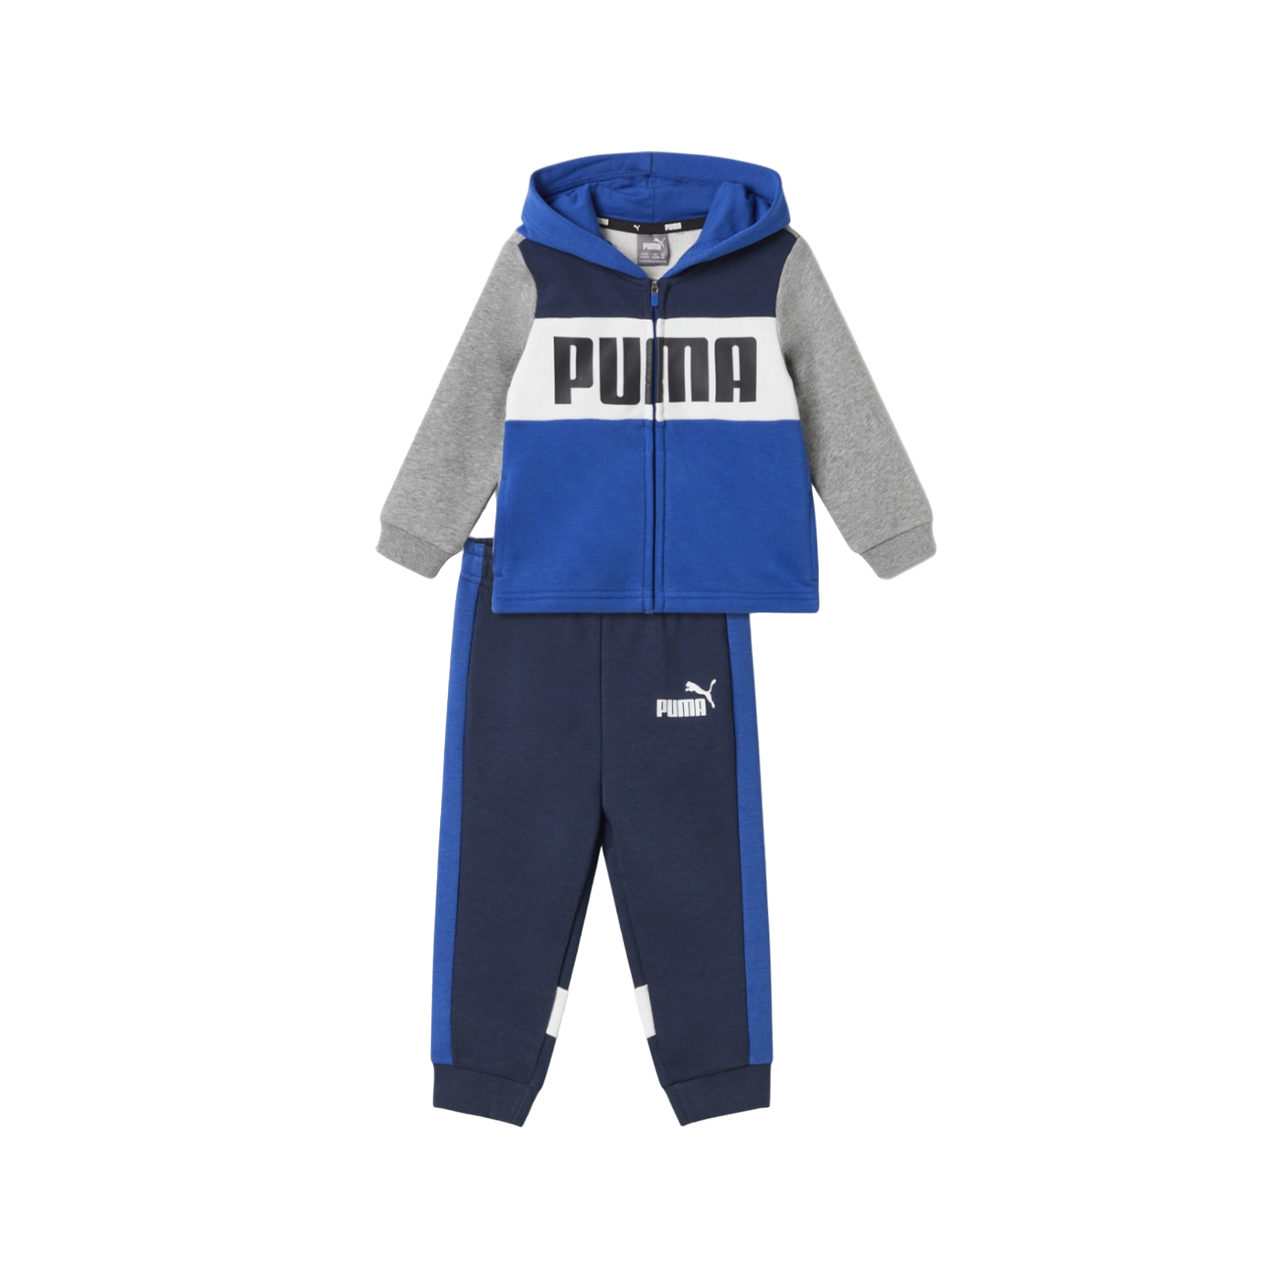 Puma tuta sportiva da bambino con cappuccio in cotone garzato 682116 17 blu-bianca-grigia